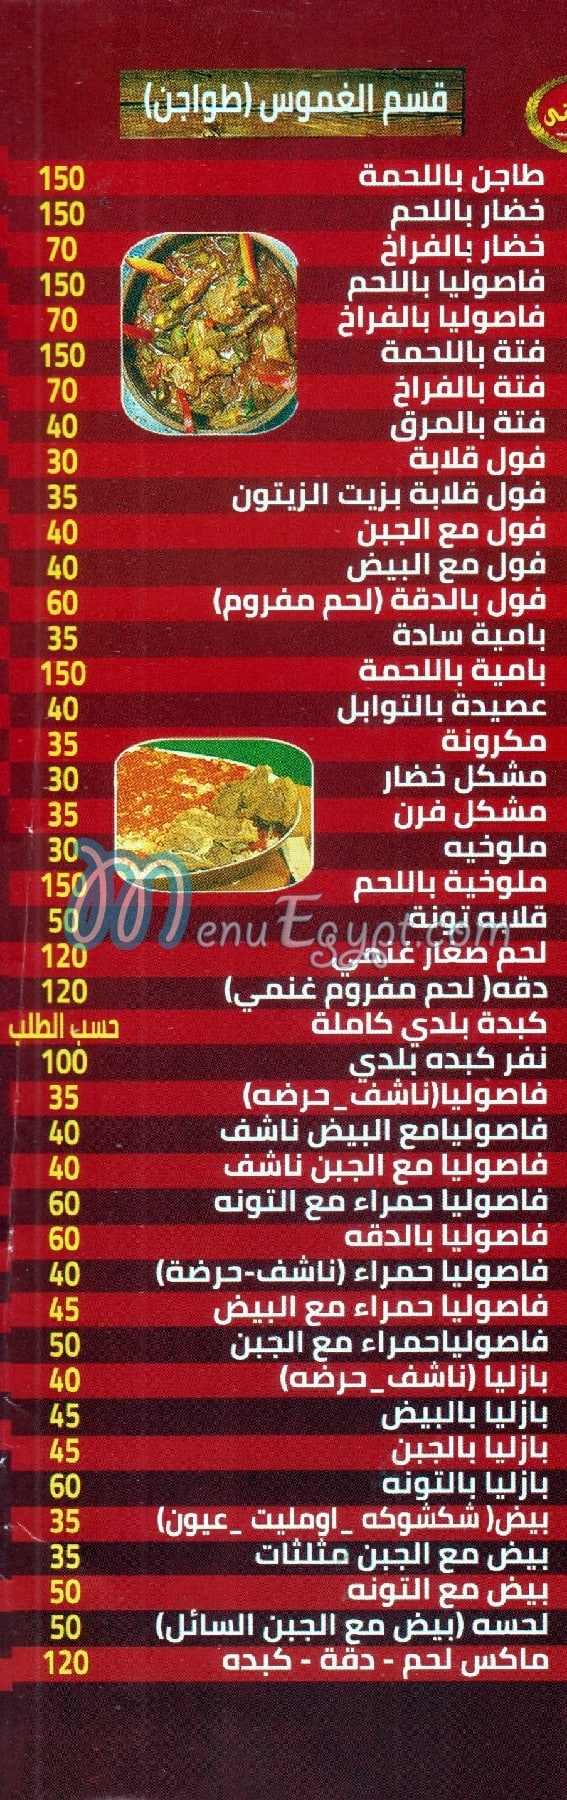 El Zainy Al Shebany online menu